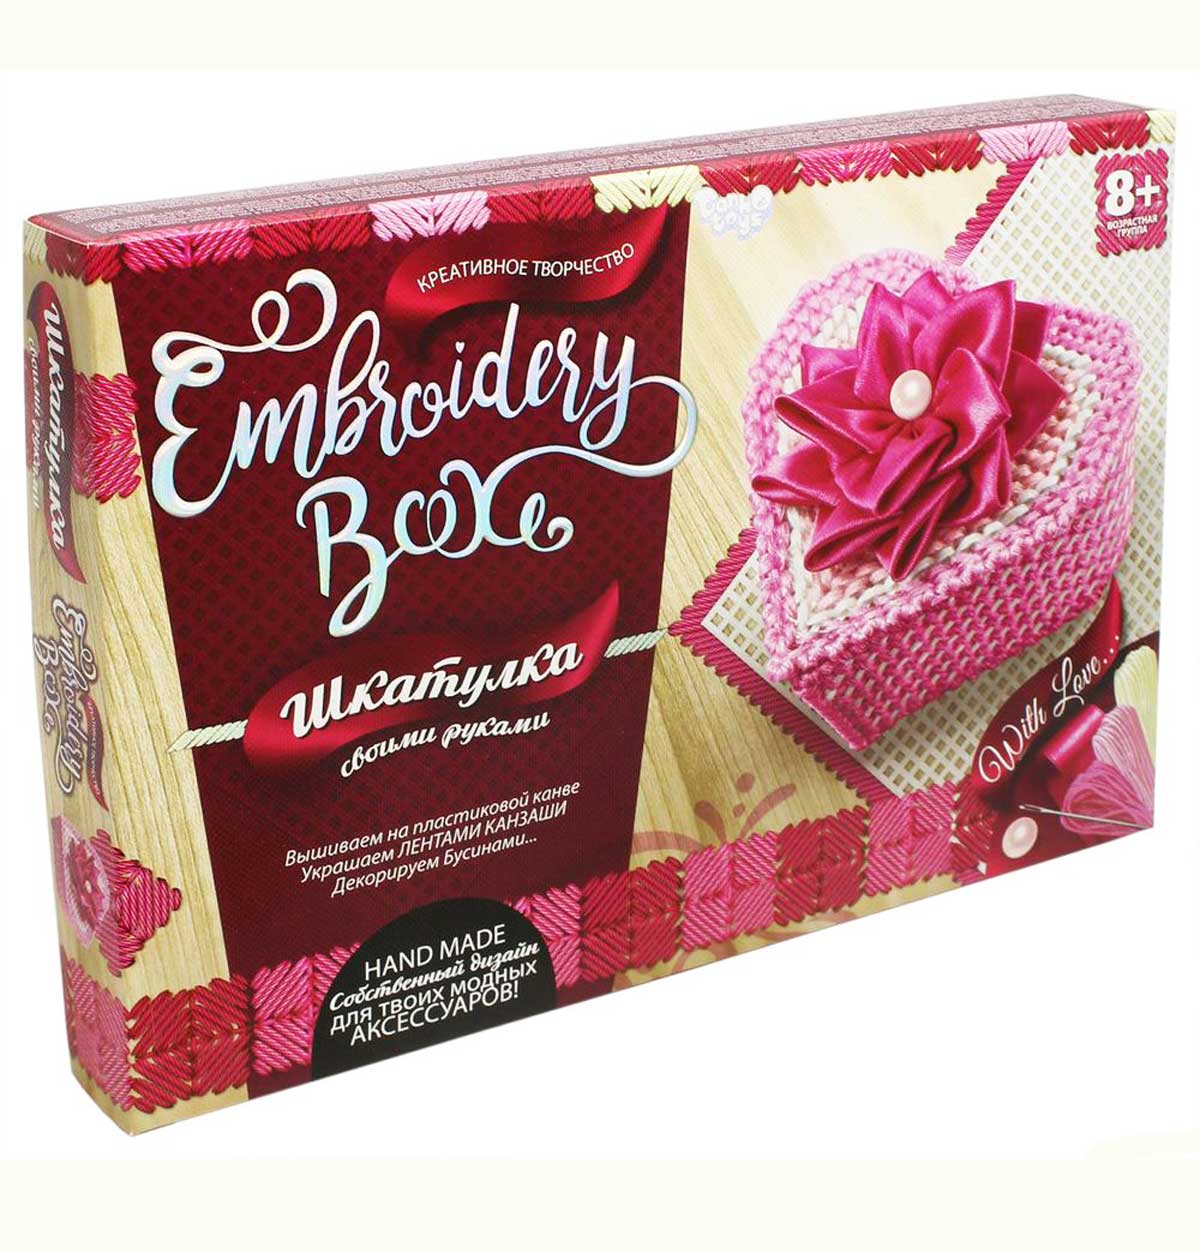 Набір для творчості шкатулка 'Embroidery Box'